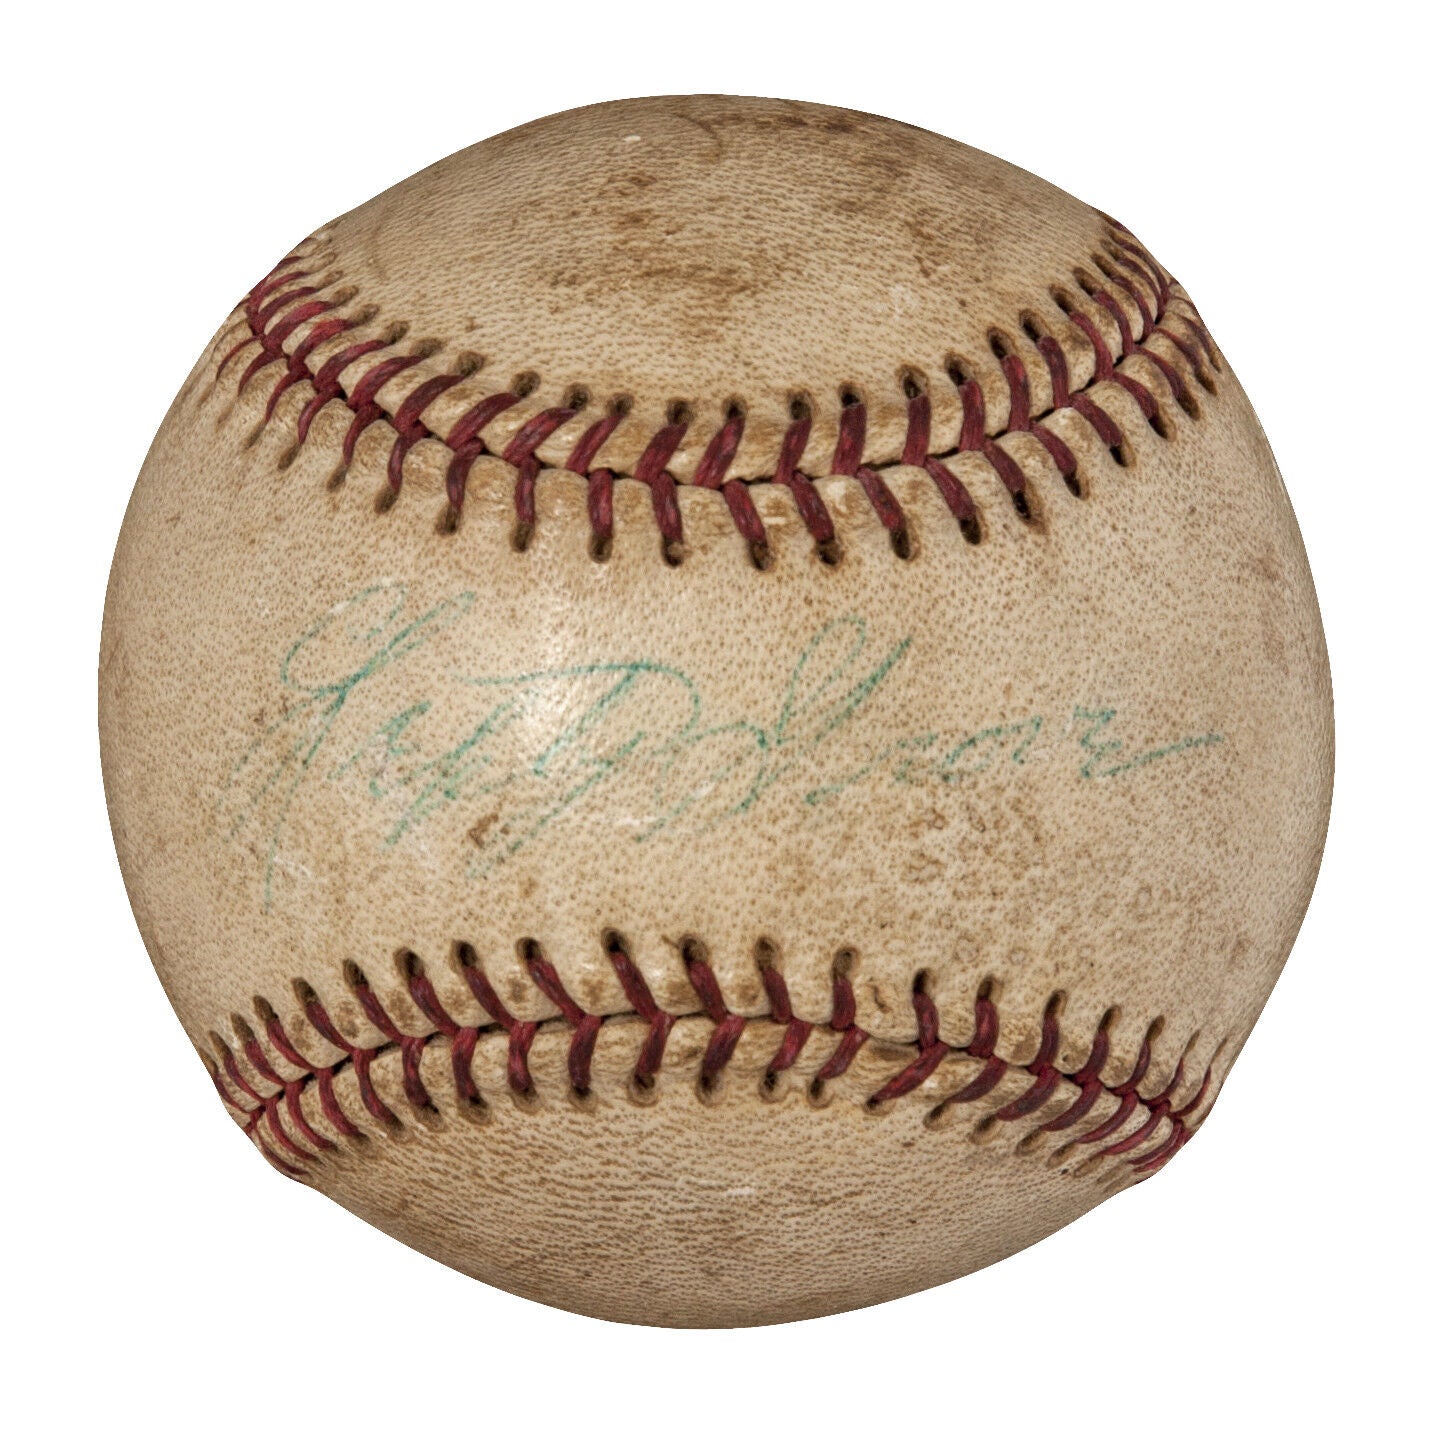 Lefty Grove Single Signed Autographed Baseball JSA COA